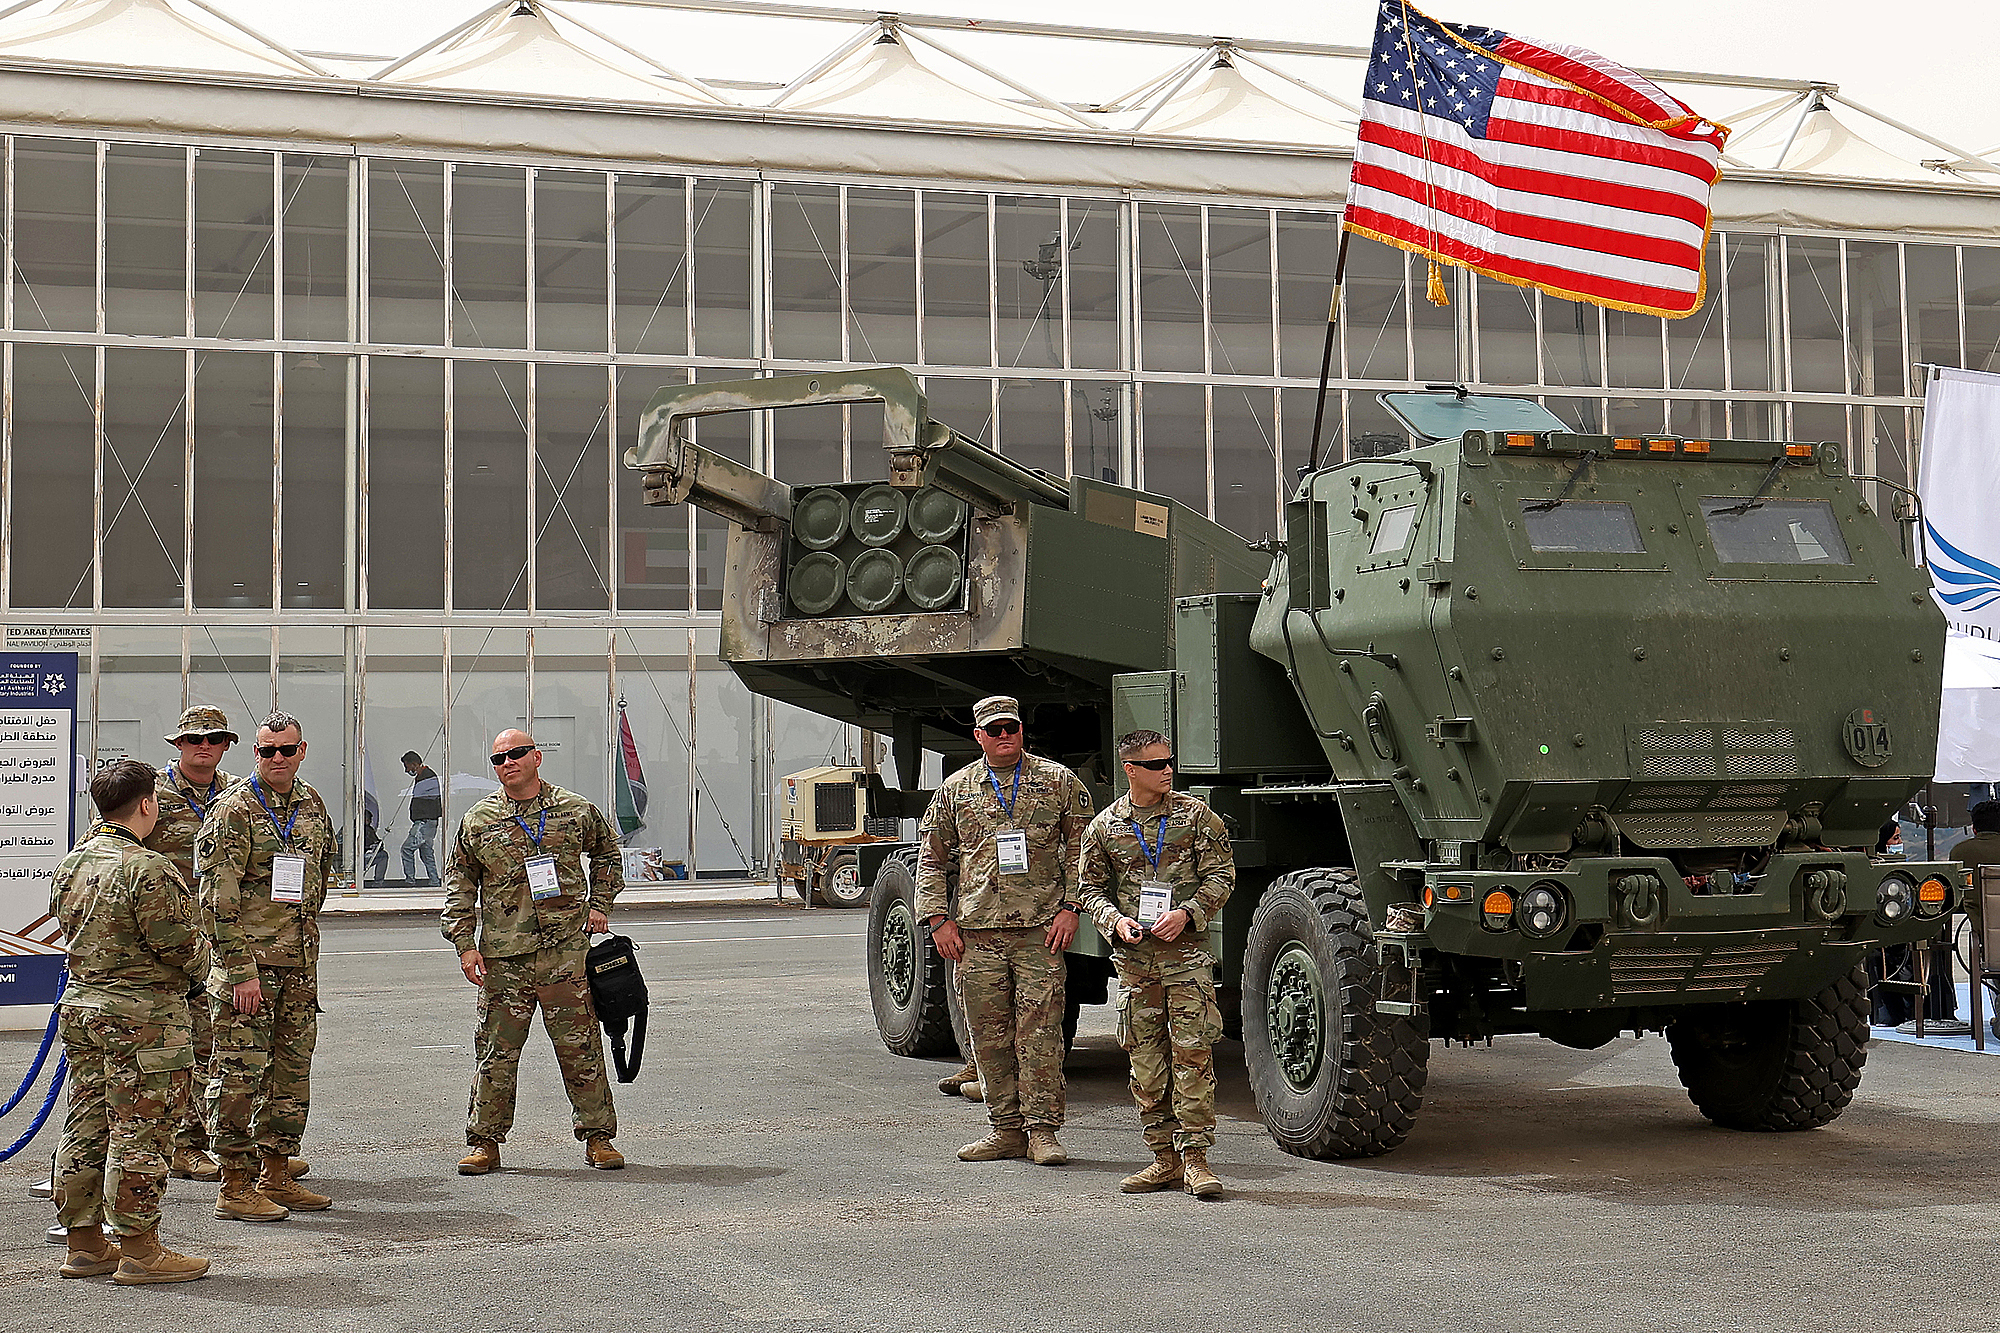 Binh lính Mỹ đứng bên cạnh Hệ thống pháo phản lực cơ động cao M142 (HIMARS) tại Riyadh, thủ đô Arab Saudi, ngày 6/3. Ảnh: AFP.